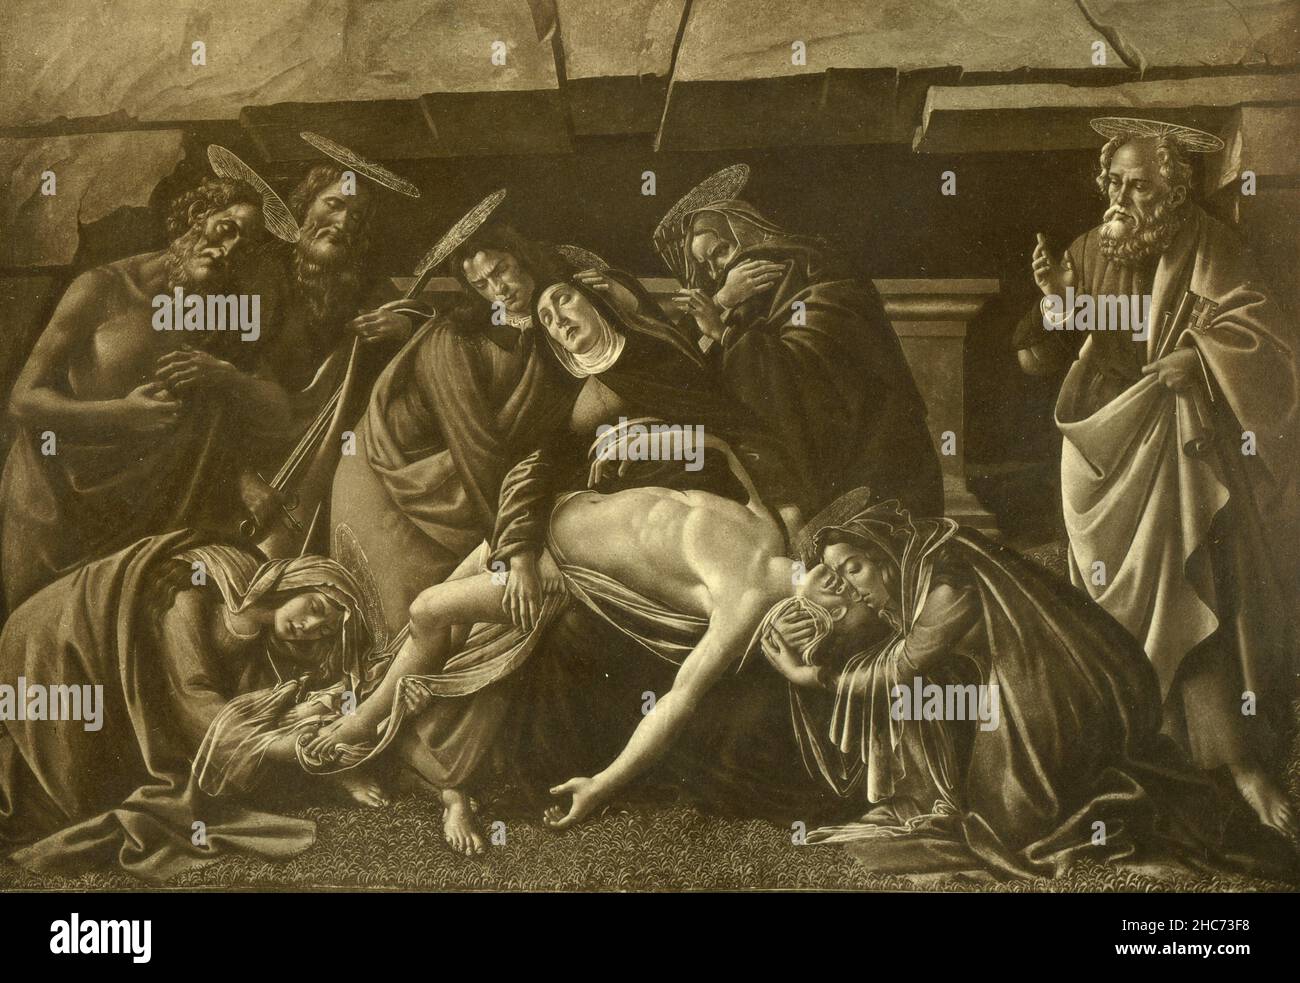 Lamentation of Christ, peinture de l'artiste italien Sandro Botticelli, Munich 1897 Banque D'Images